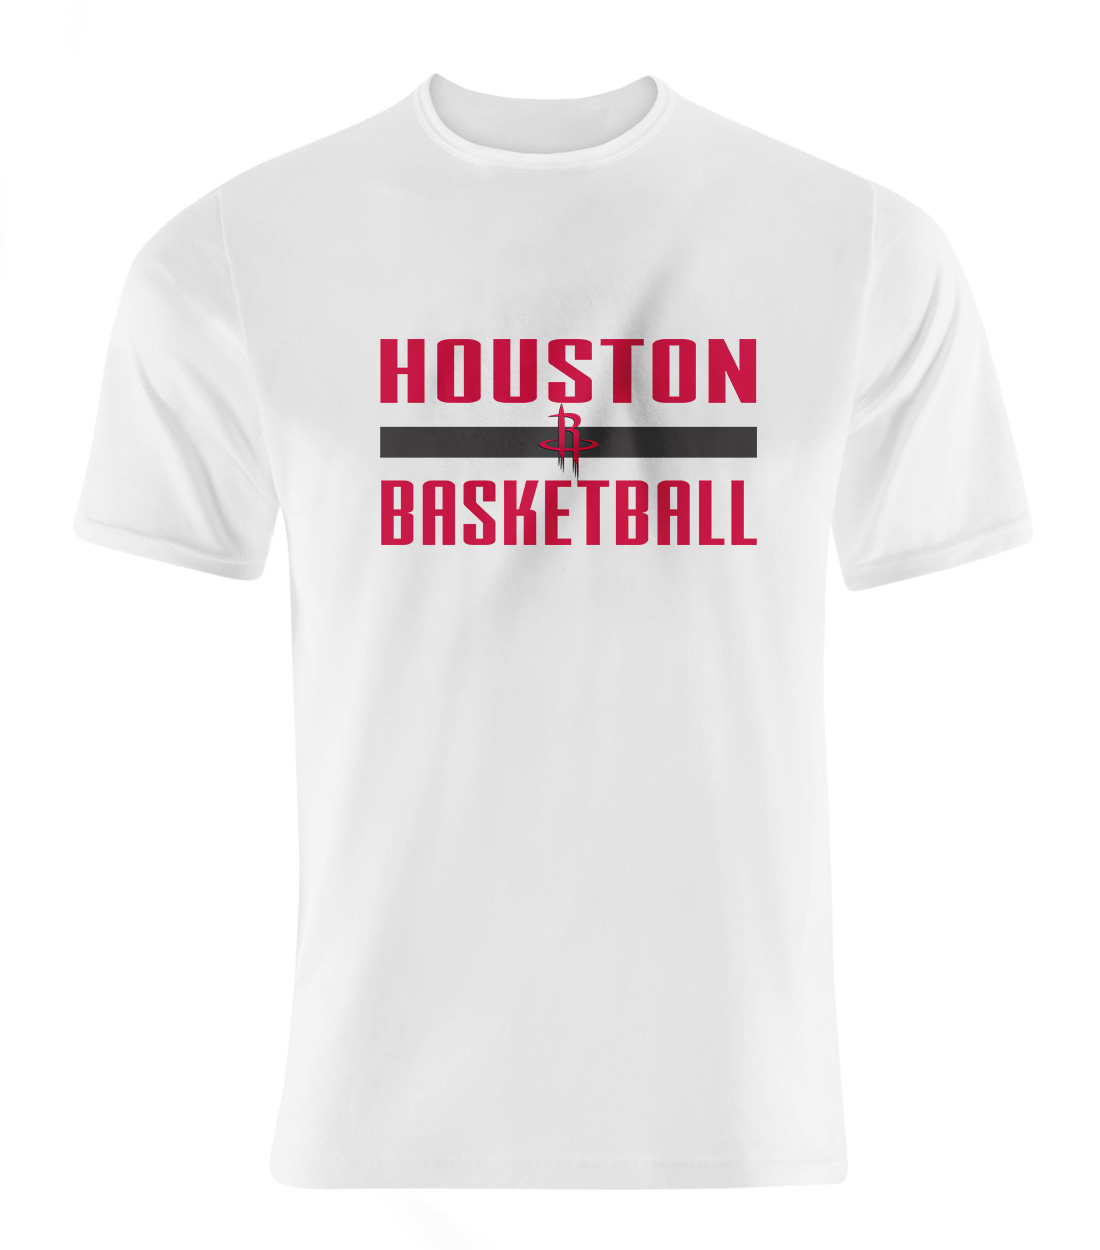 Houston Basketball Tshirt (TSH-wht-706)